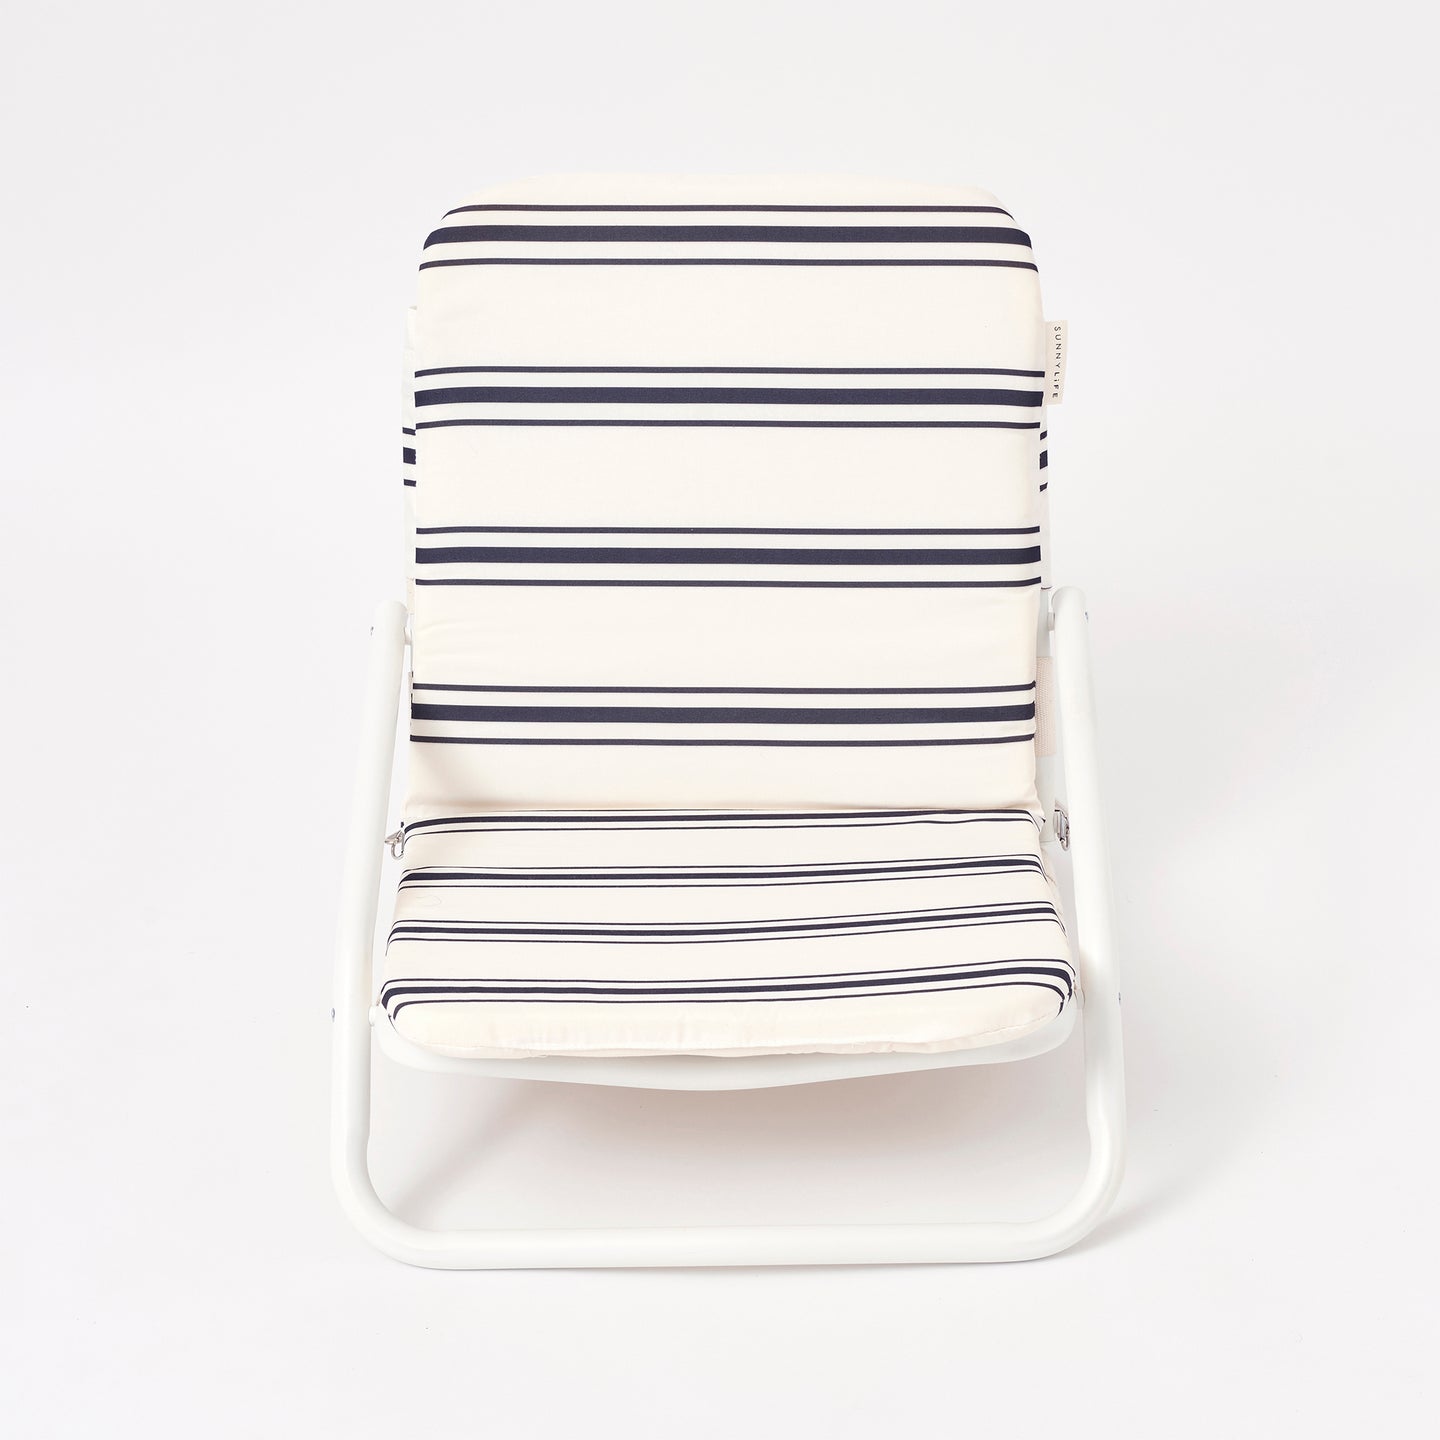 Cushioned Beach Chair Casa Fes